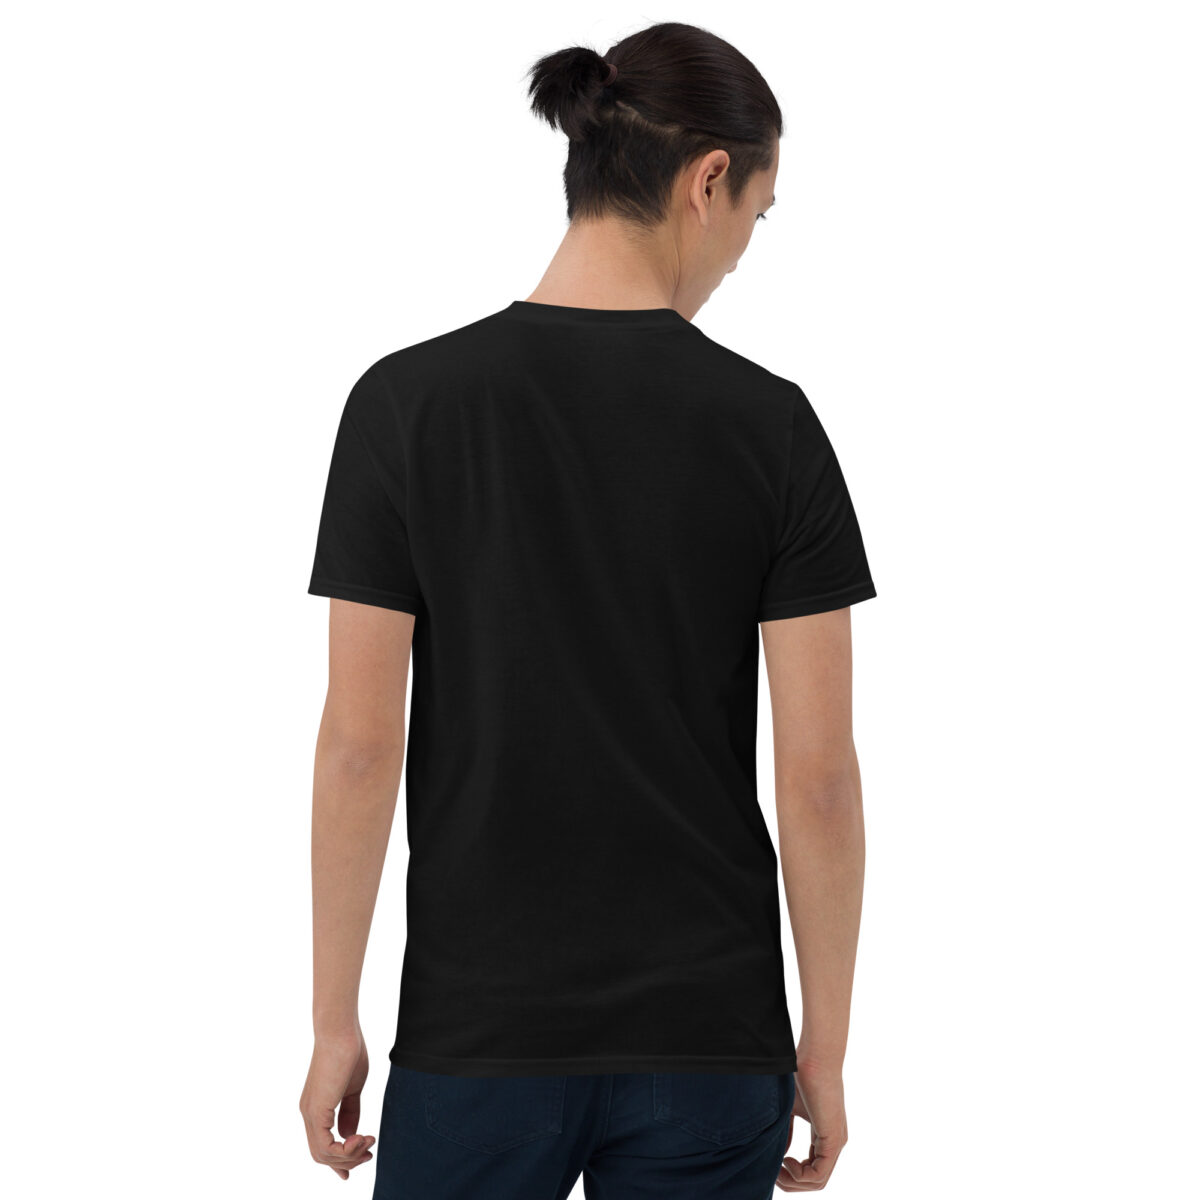 unisex-basic-softstyle-t-shirt-black-back-641e14735f13b.jpg